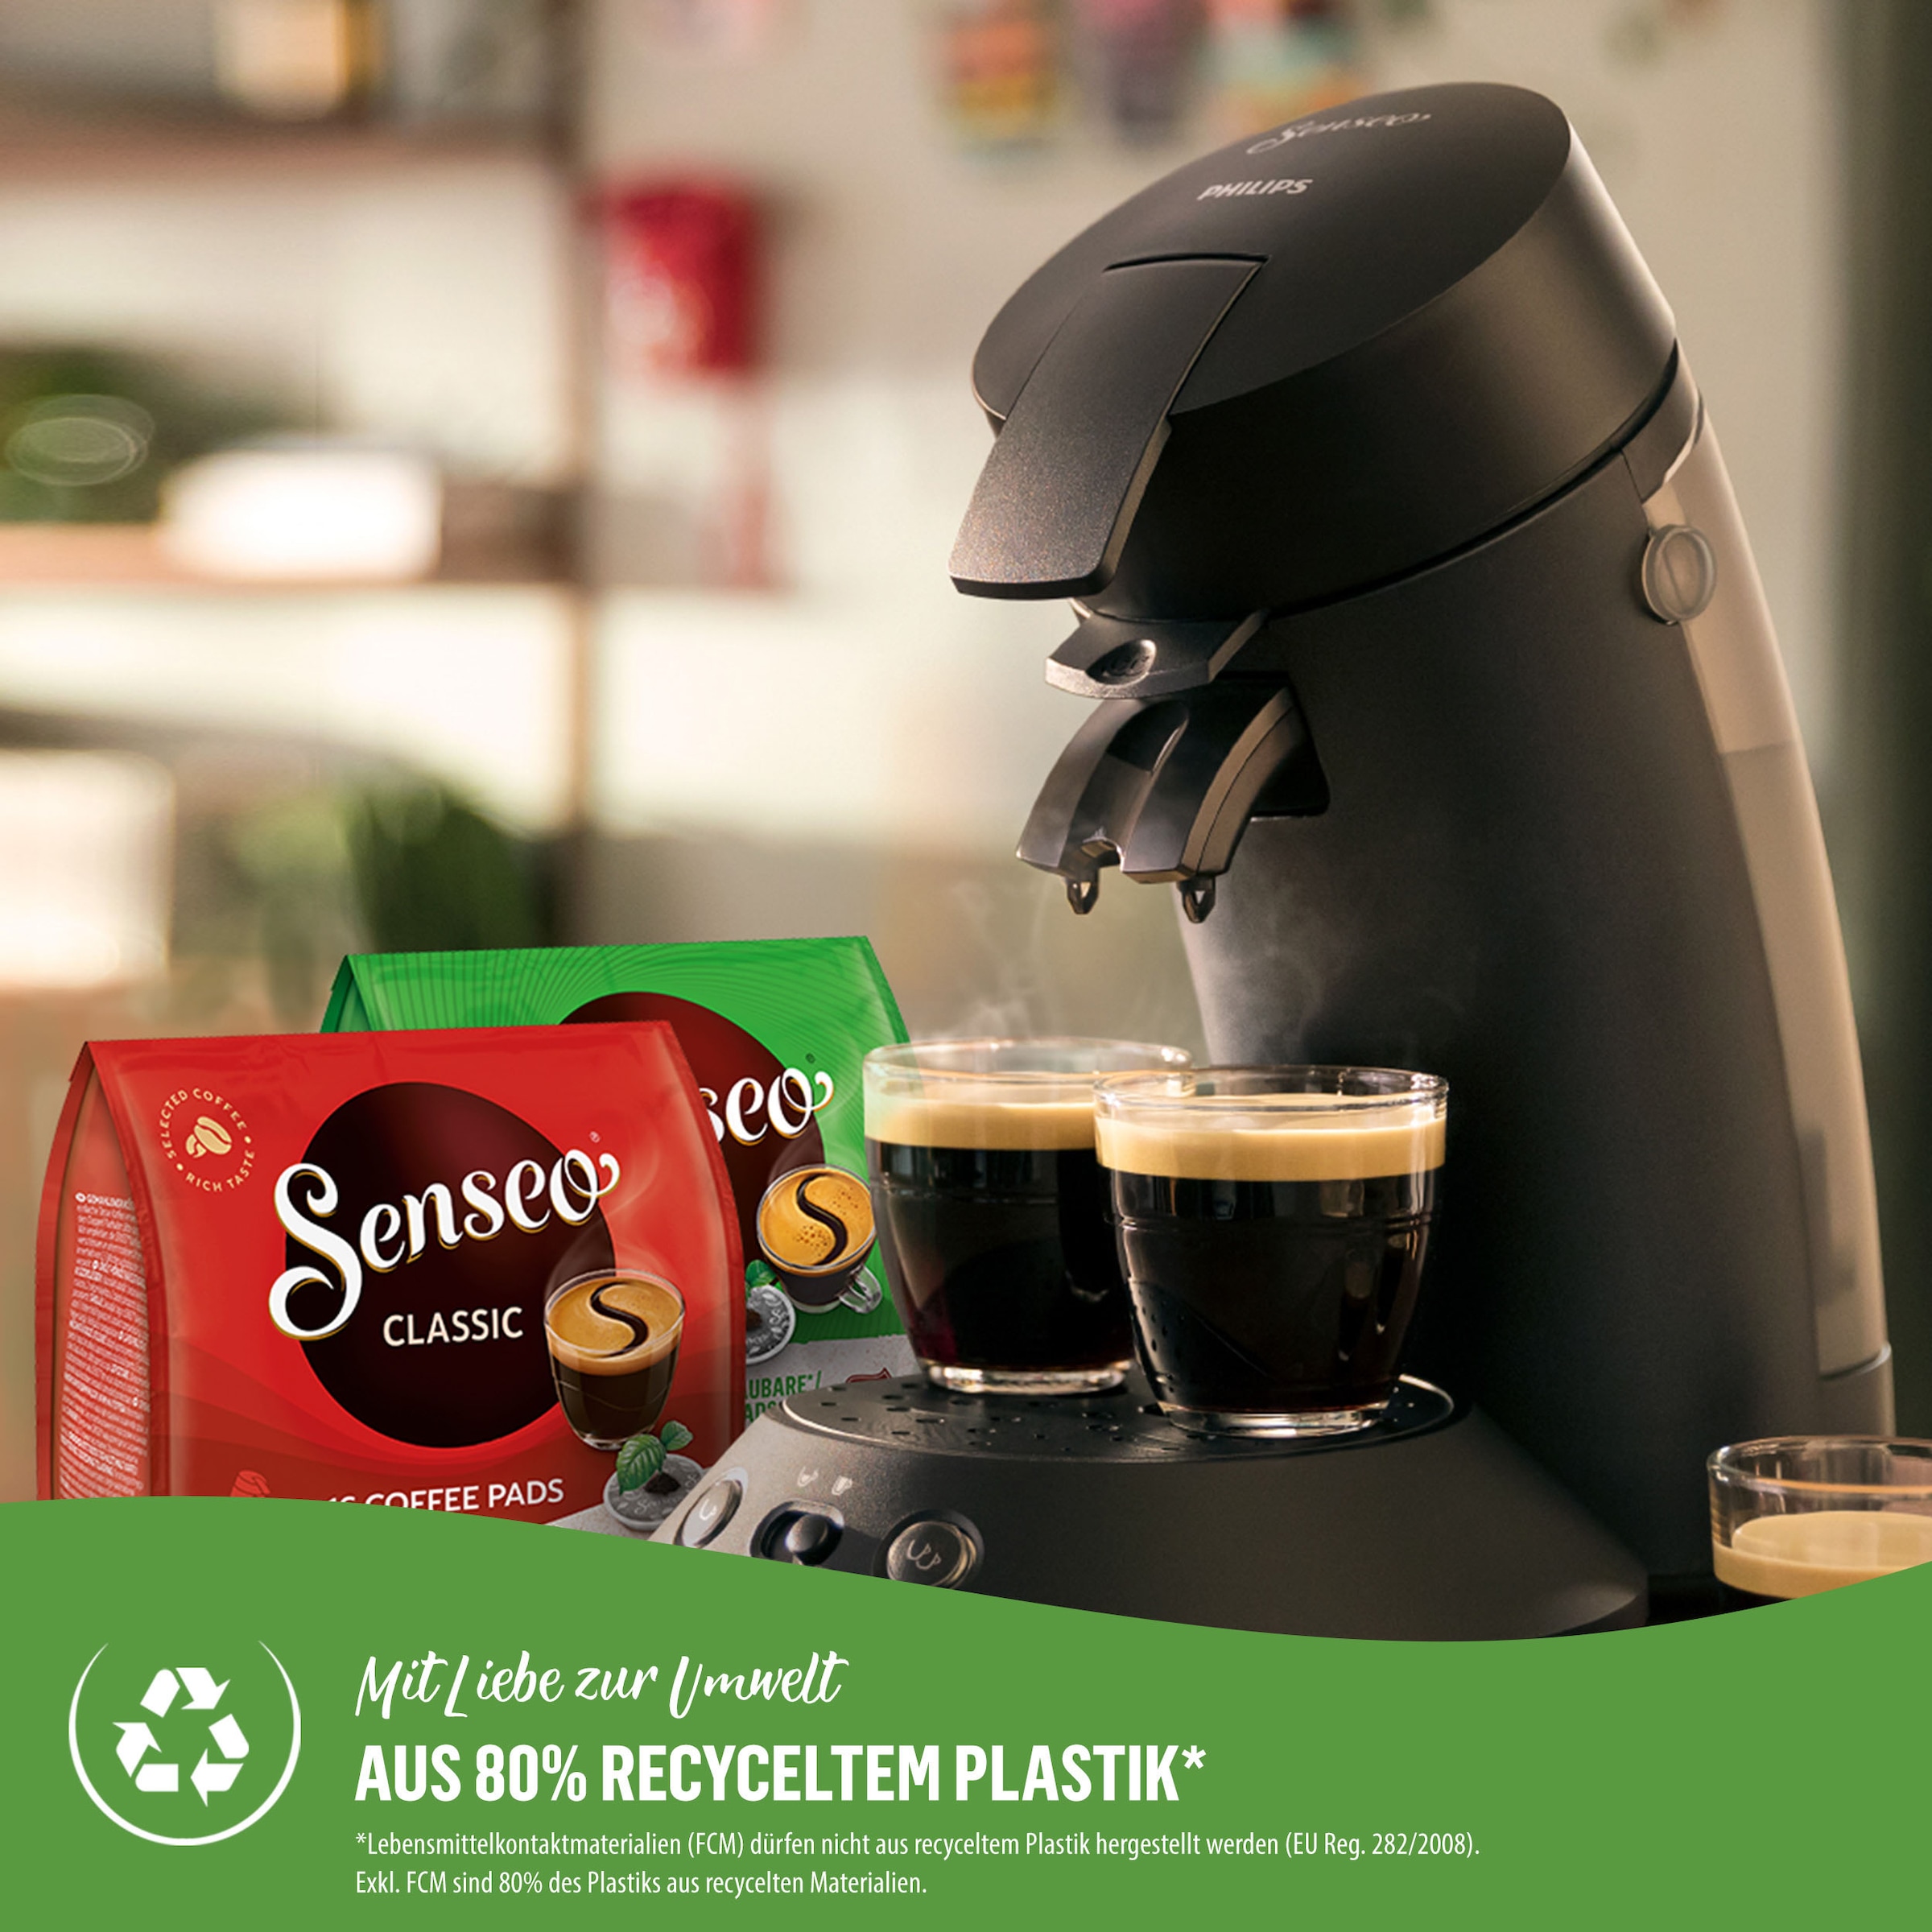 Philips Senseo Kaffeepadmaschine OTTO 100 jetzt Eco Plus kaufen bei Senseo CSA210/22, recyceltem und bis Pads € zurückerhalten 80% aus »Original Plastik*«, max.33